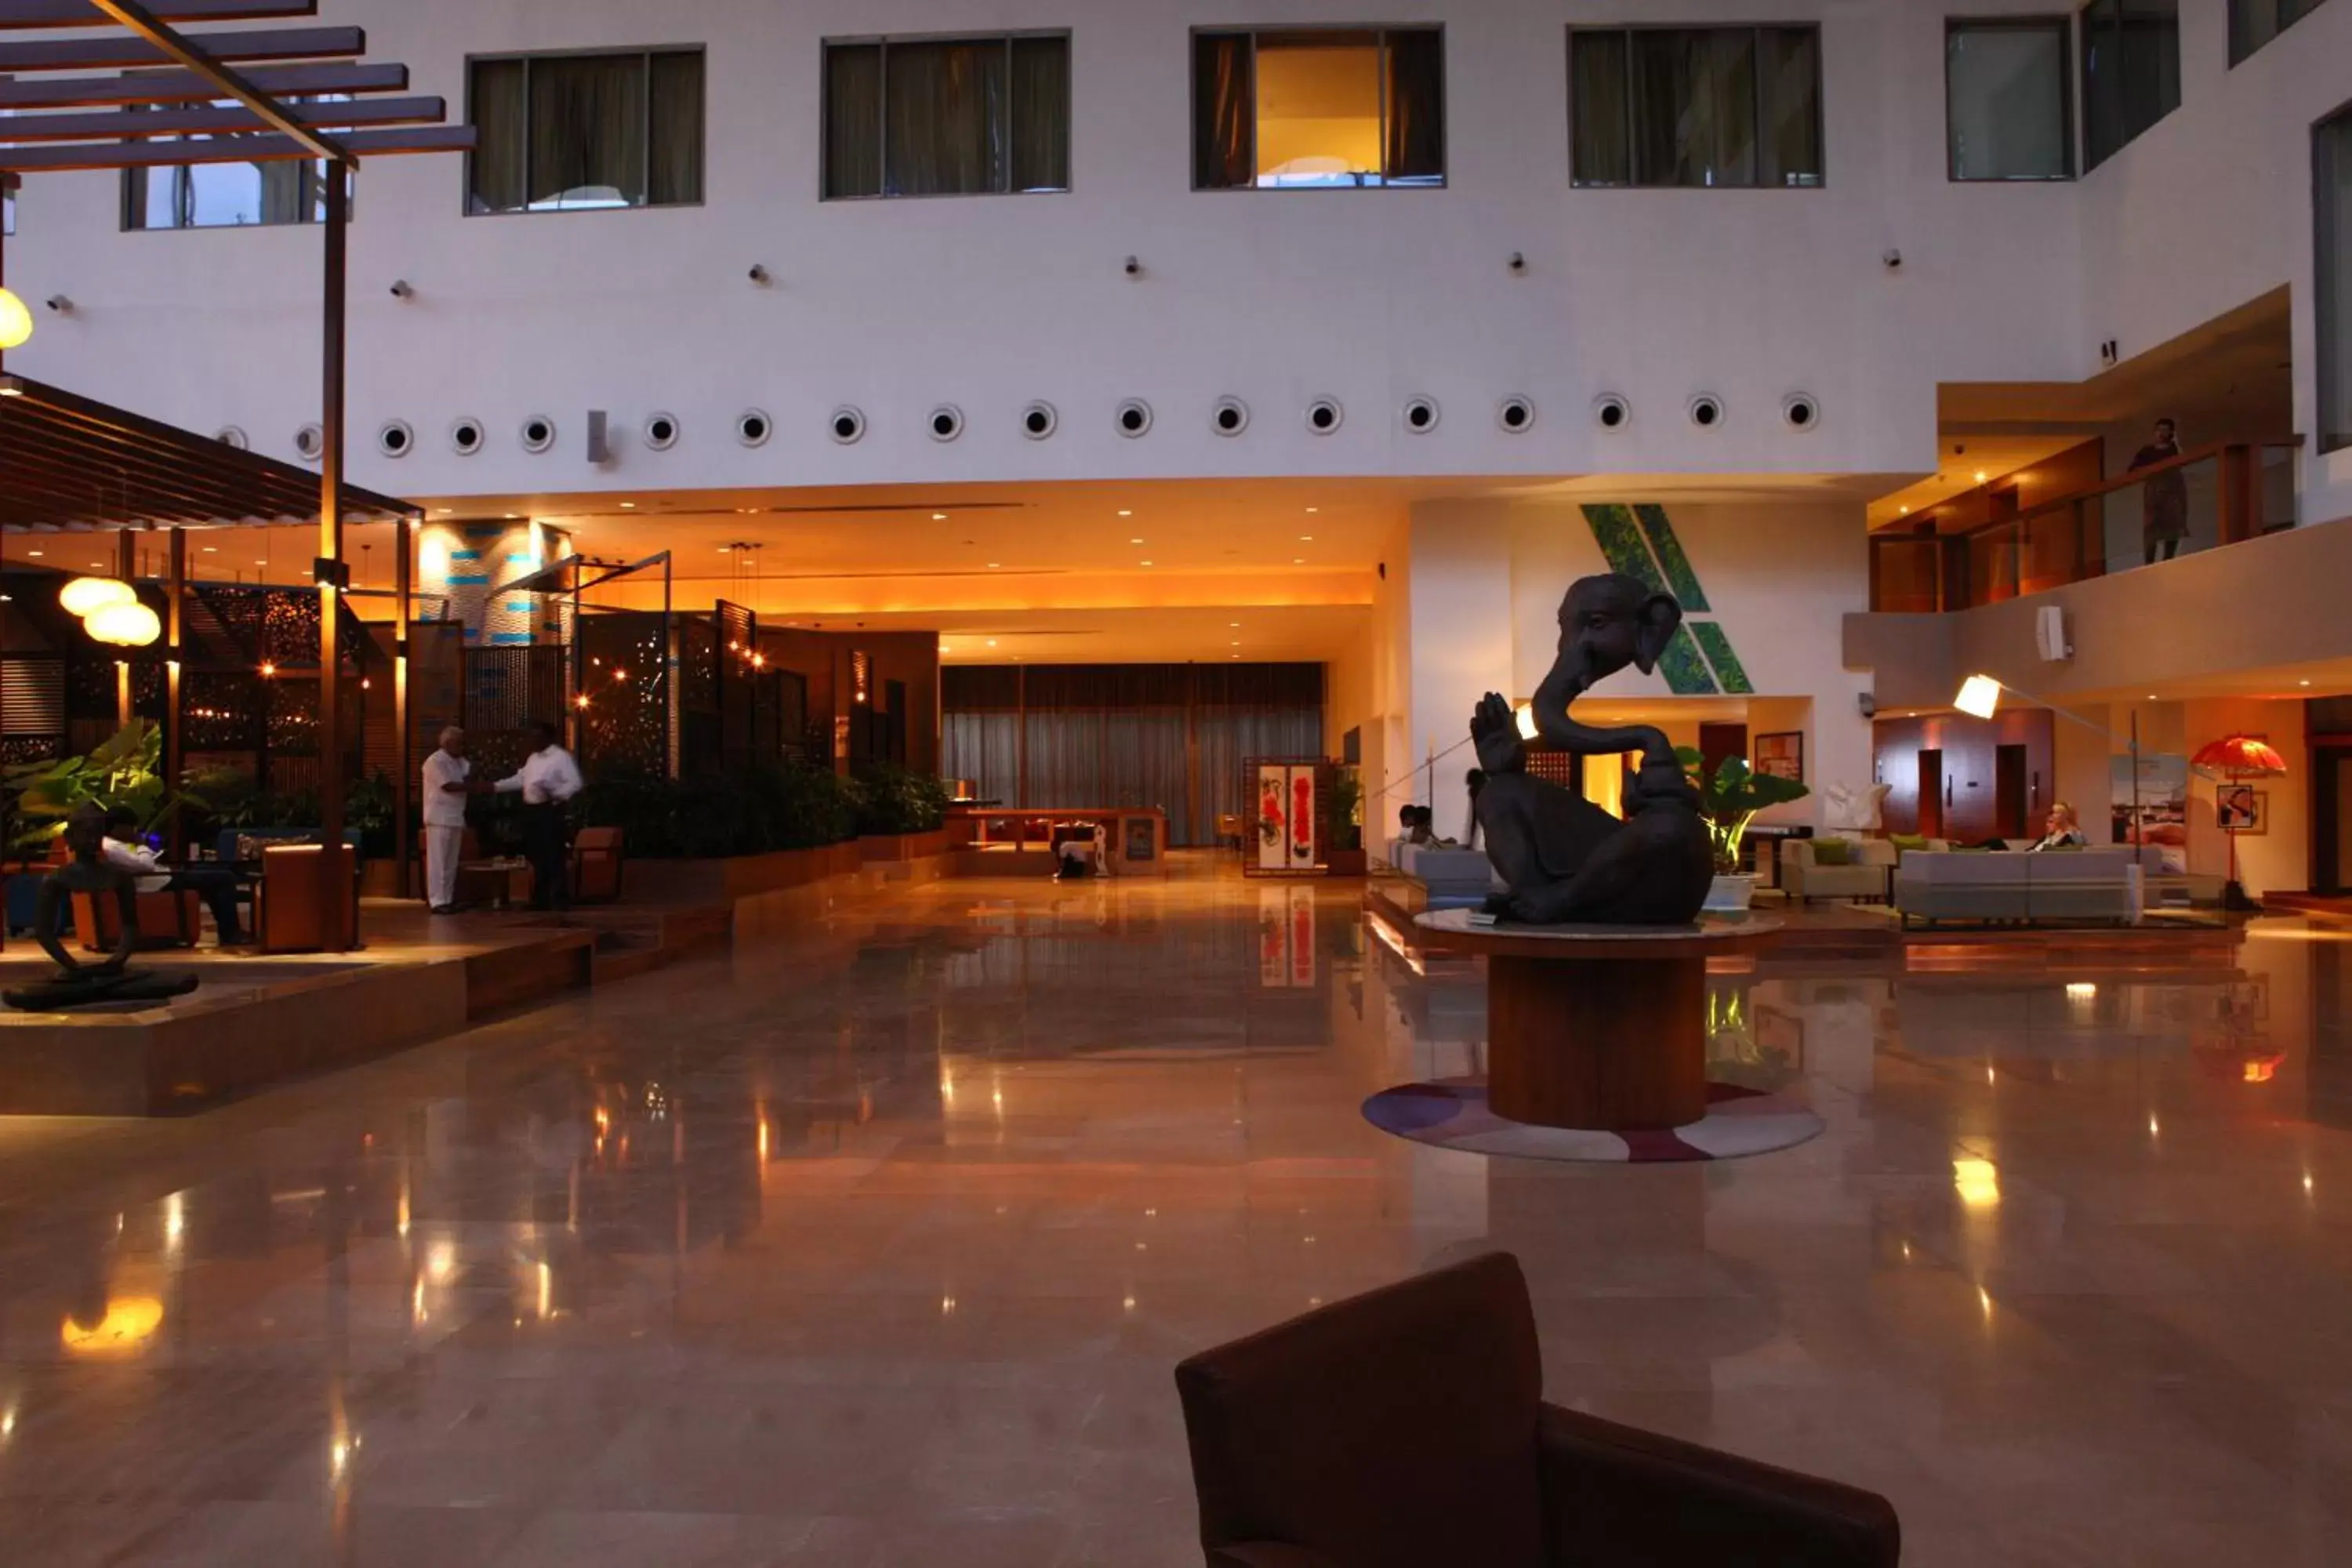 Lobby or reception, Lobby/Reception in Radisson Blu Plaza Hotel Hyderabad Banjara Hills